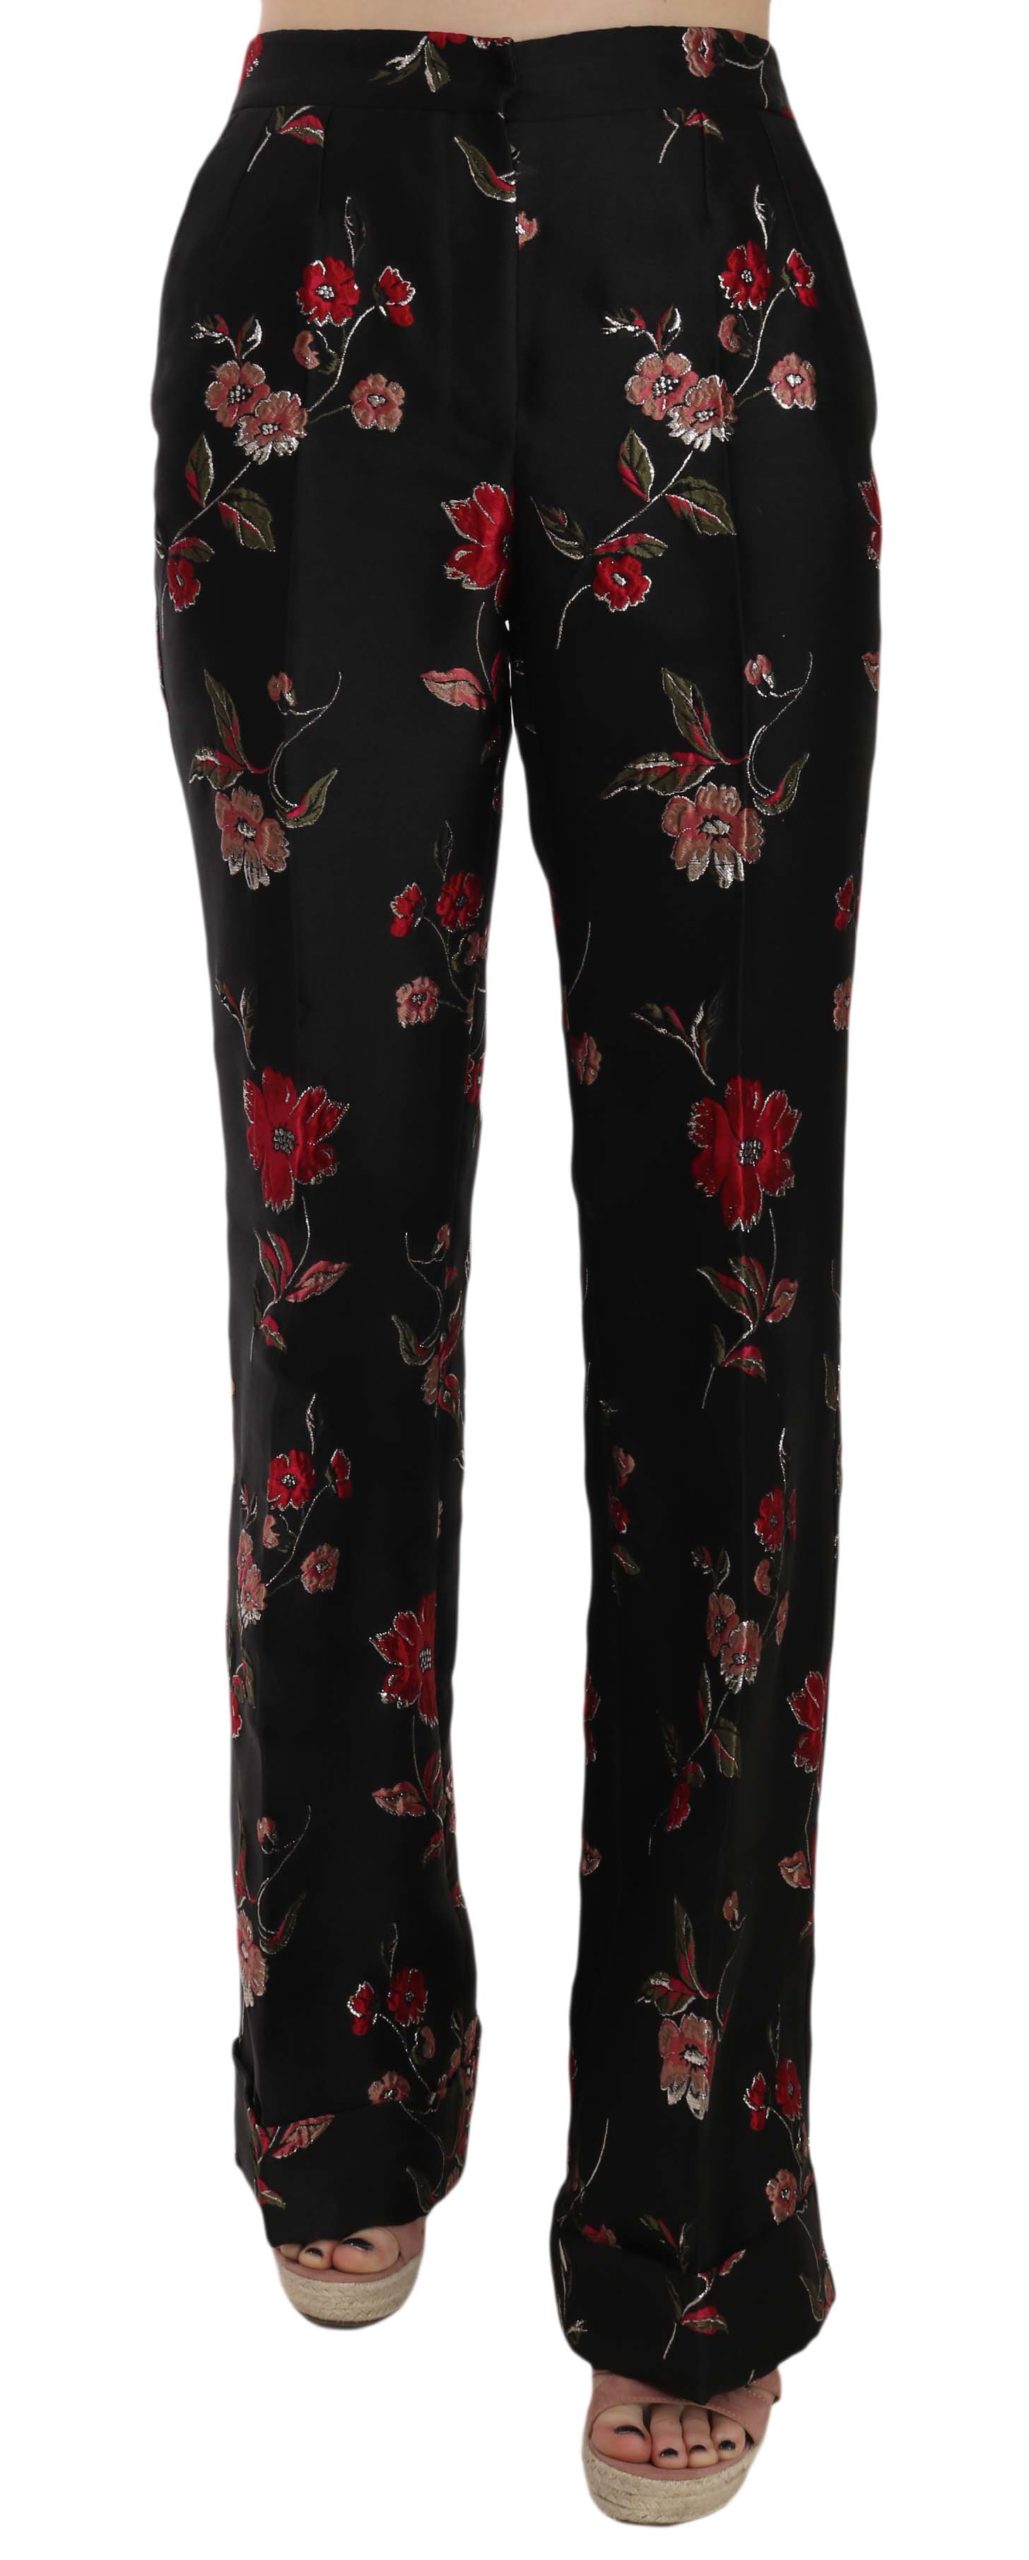 Dolce & Gabbana Women's Floral Print Trouser Black PAN70009 - IT38|XS